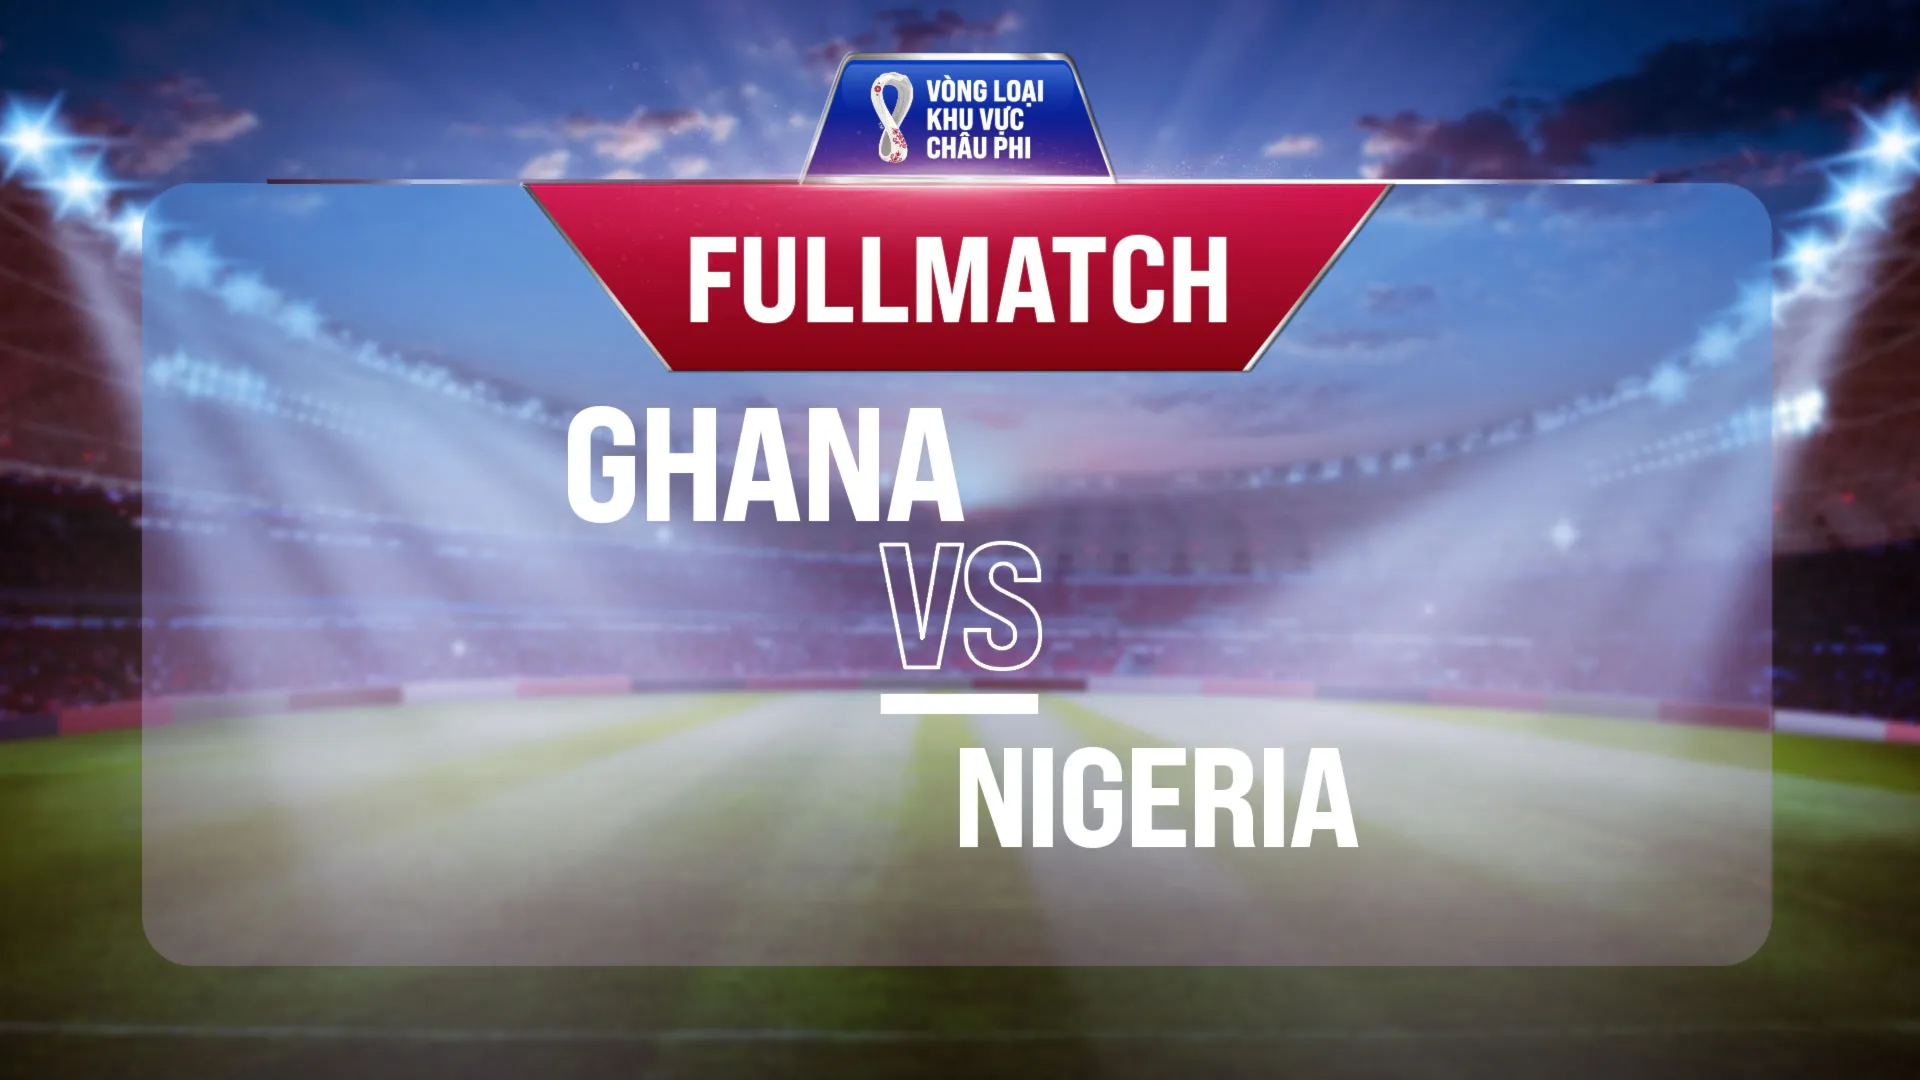 Full match Ghana - Nigeria (Lượt trận 1 Vòng Loại thứ 3 World Cup 2022 - Khu vực châu Phi)